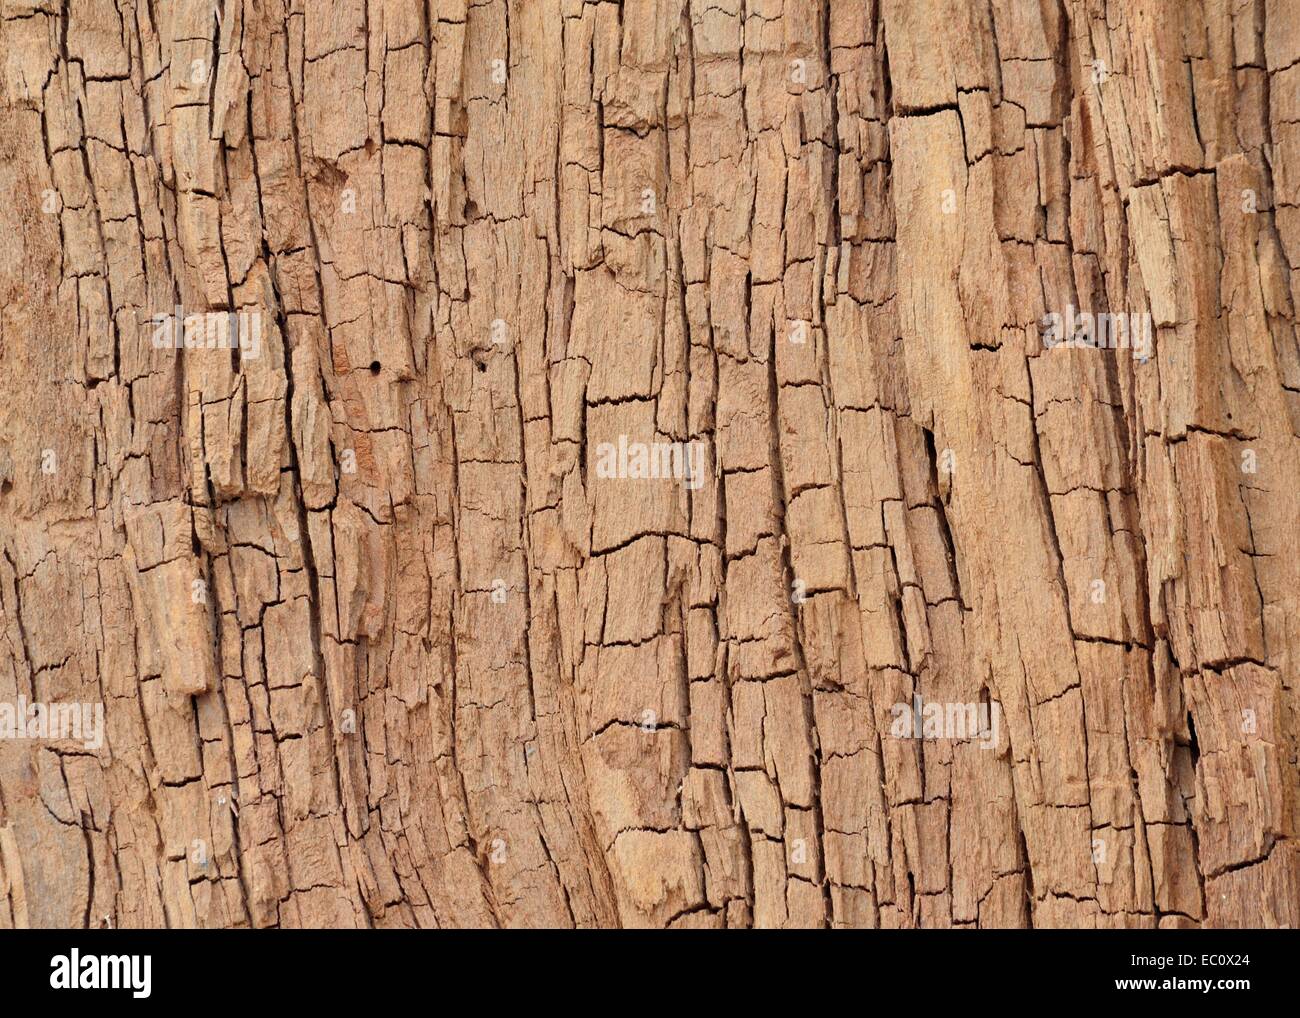 Eine Holzmaserung für den Hintergrund oder Kopie. Stockfoto